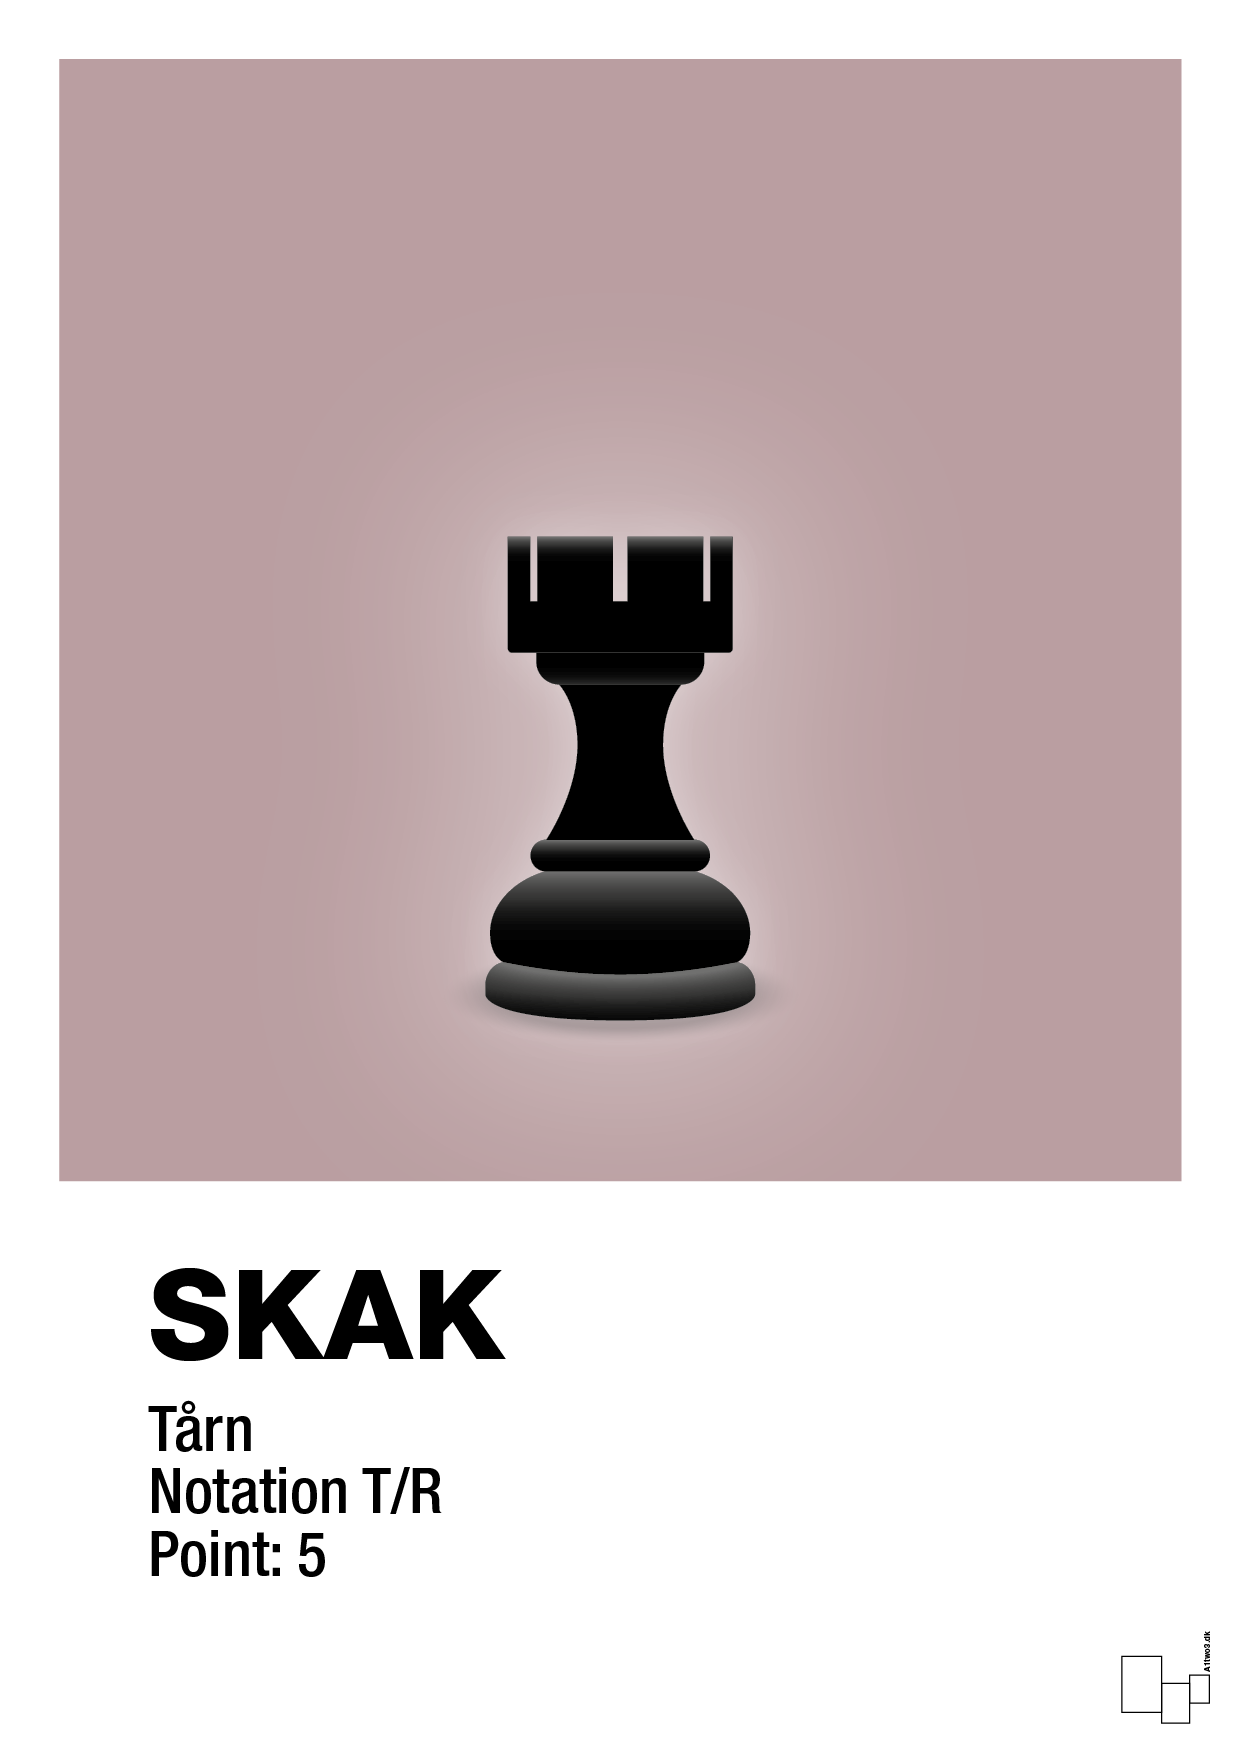 plakat: spillebrikken tårn i sort